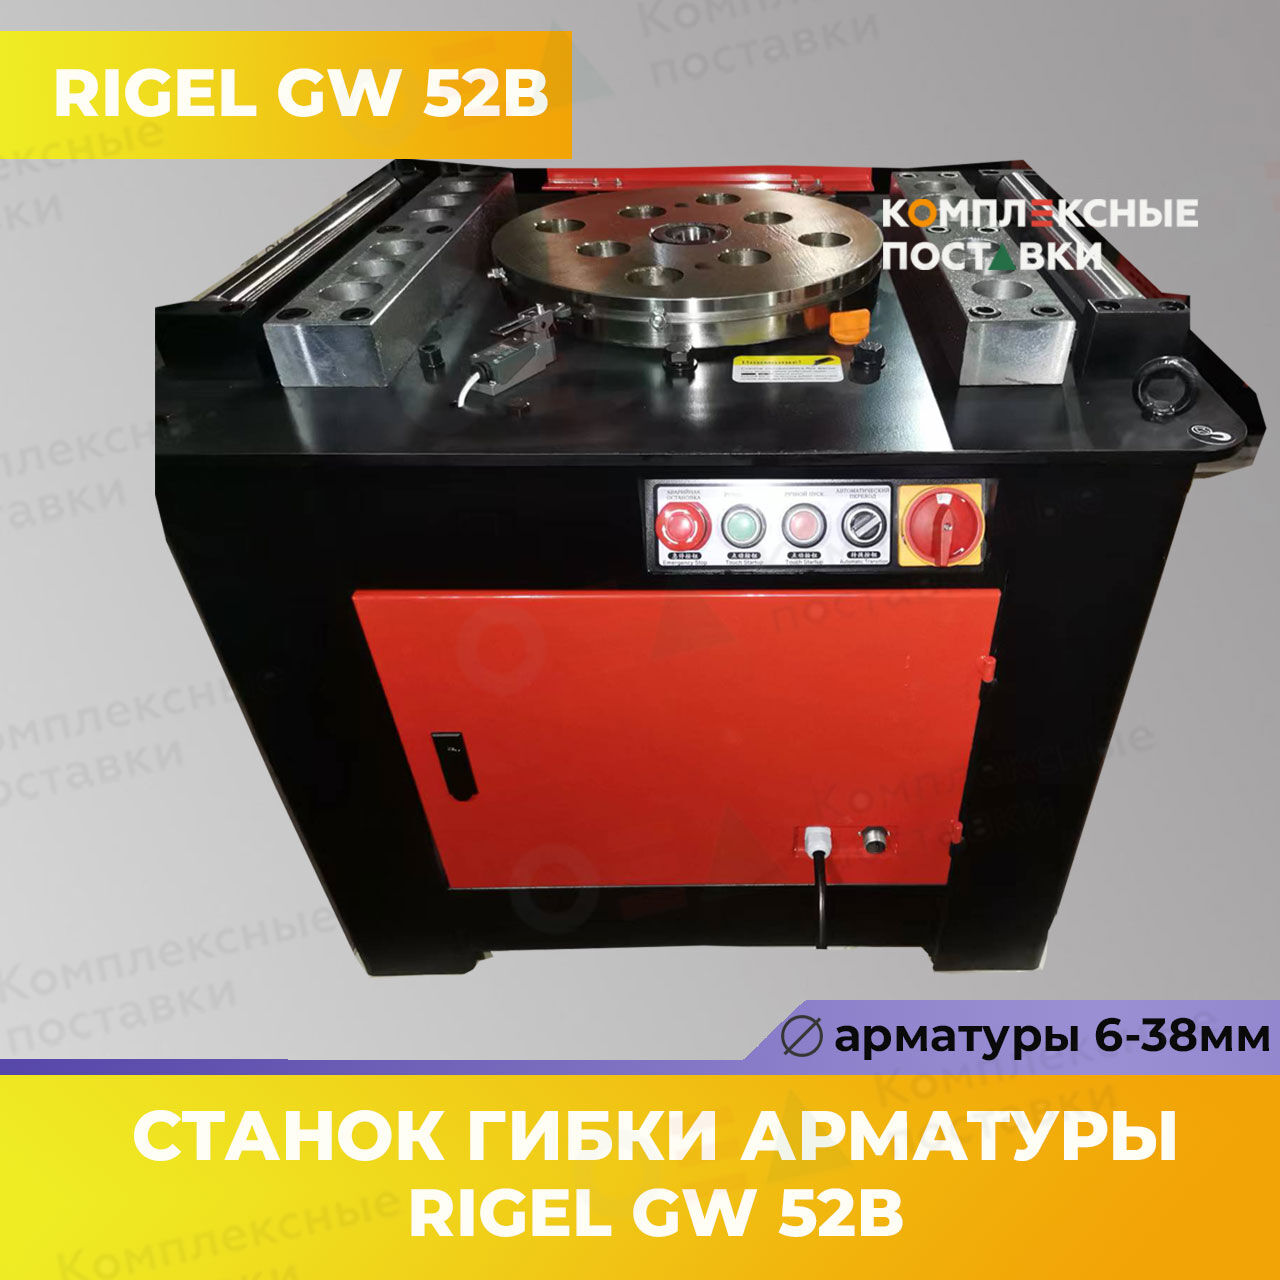 Станок для гибки арматуры GW 52В  Rigel 6-45мм купить в Комплексные Поставки 1